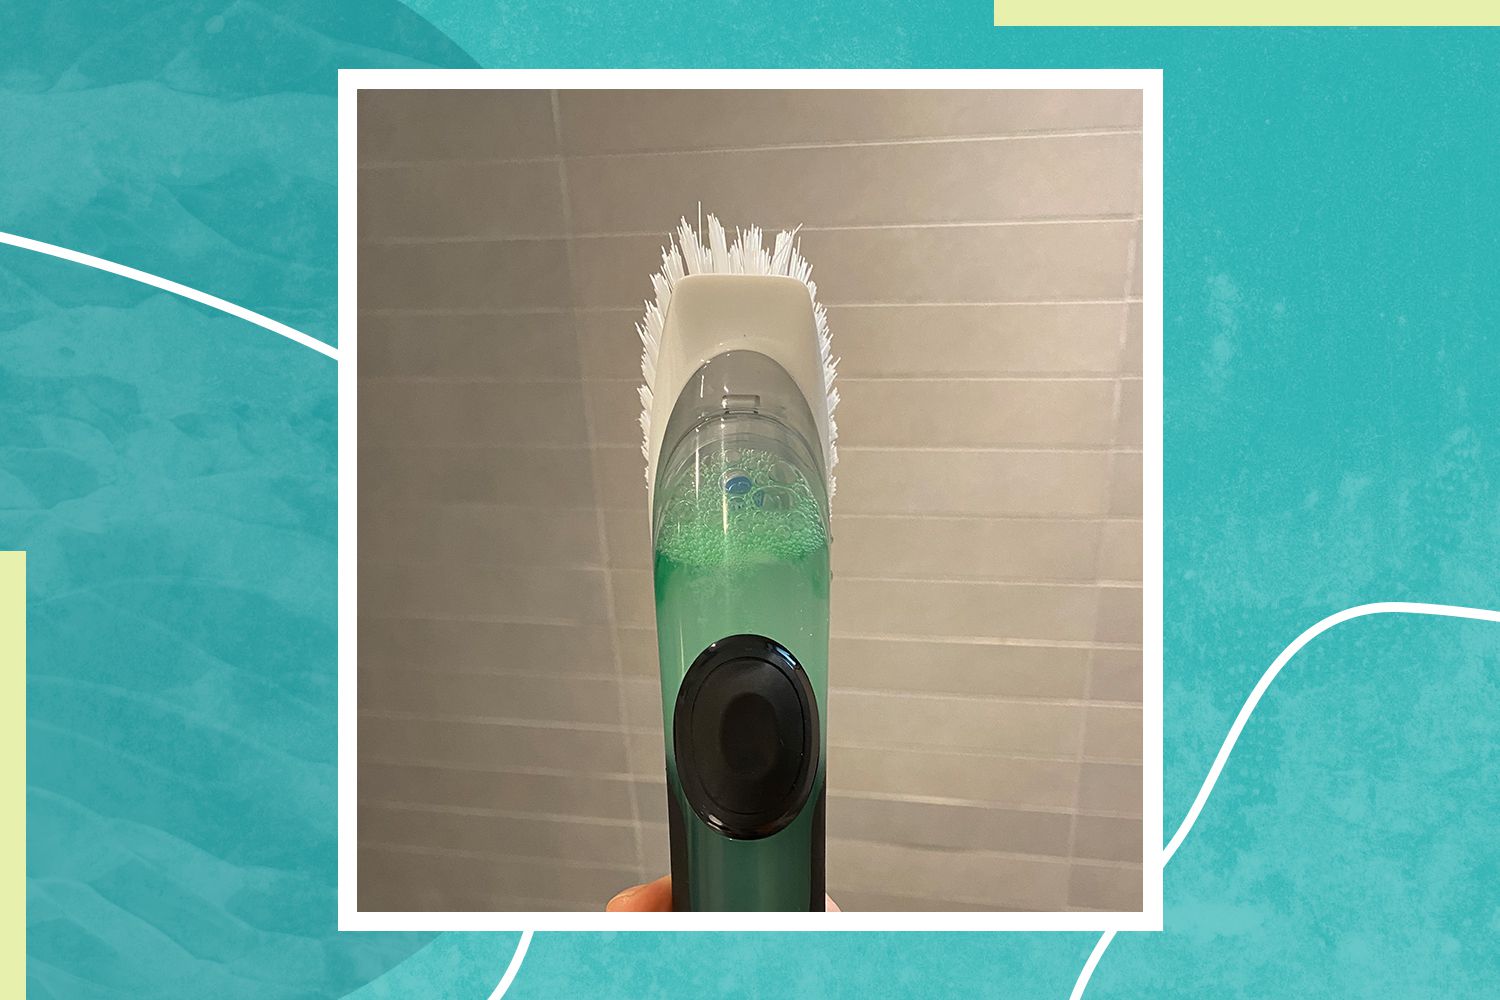 escova de pé cheia de detergente e vinagre para testar um hack viral de limpeza de chuveiro do TikTok